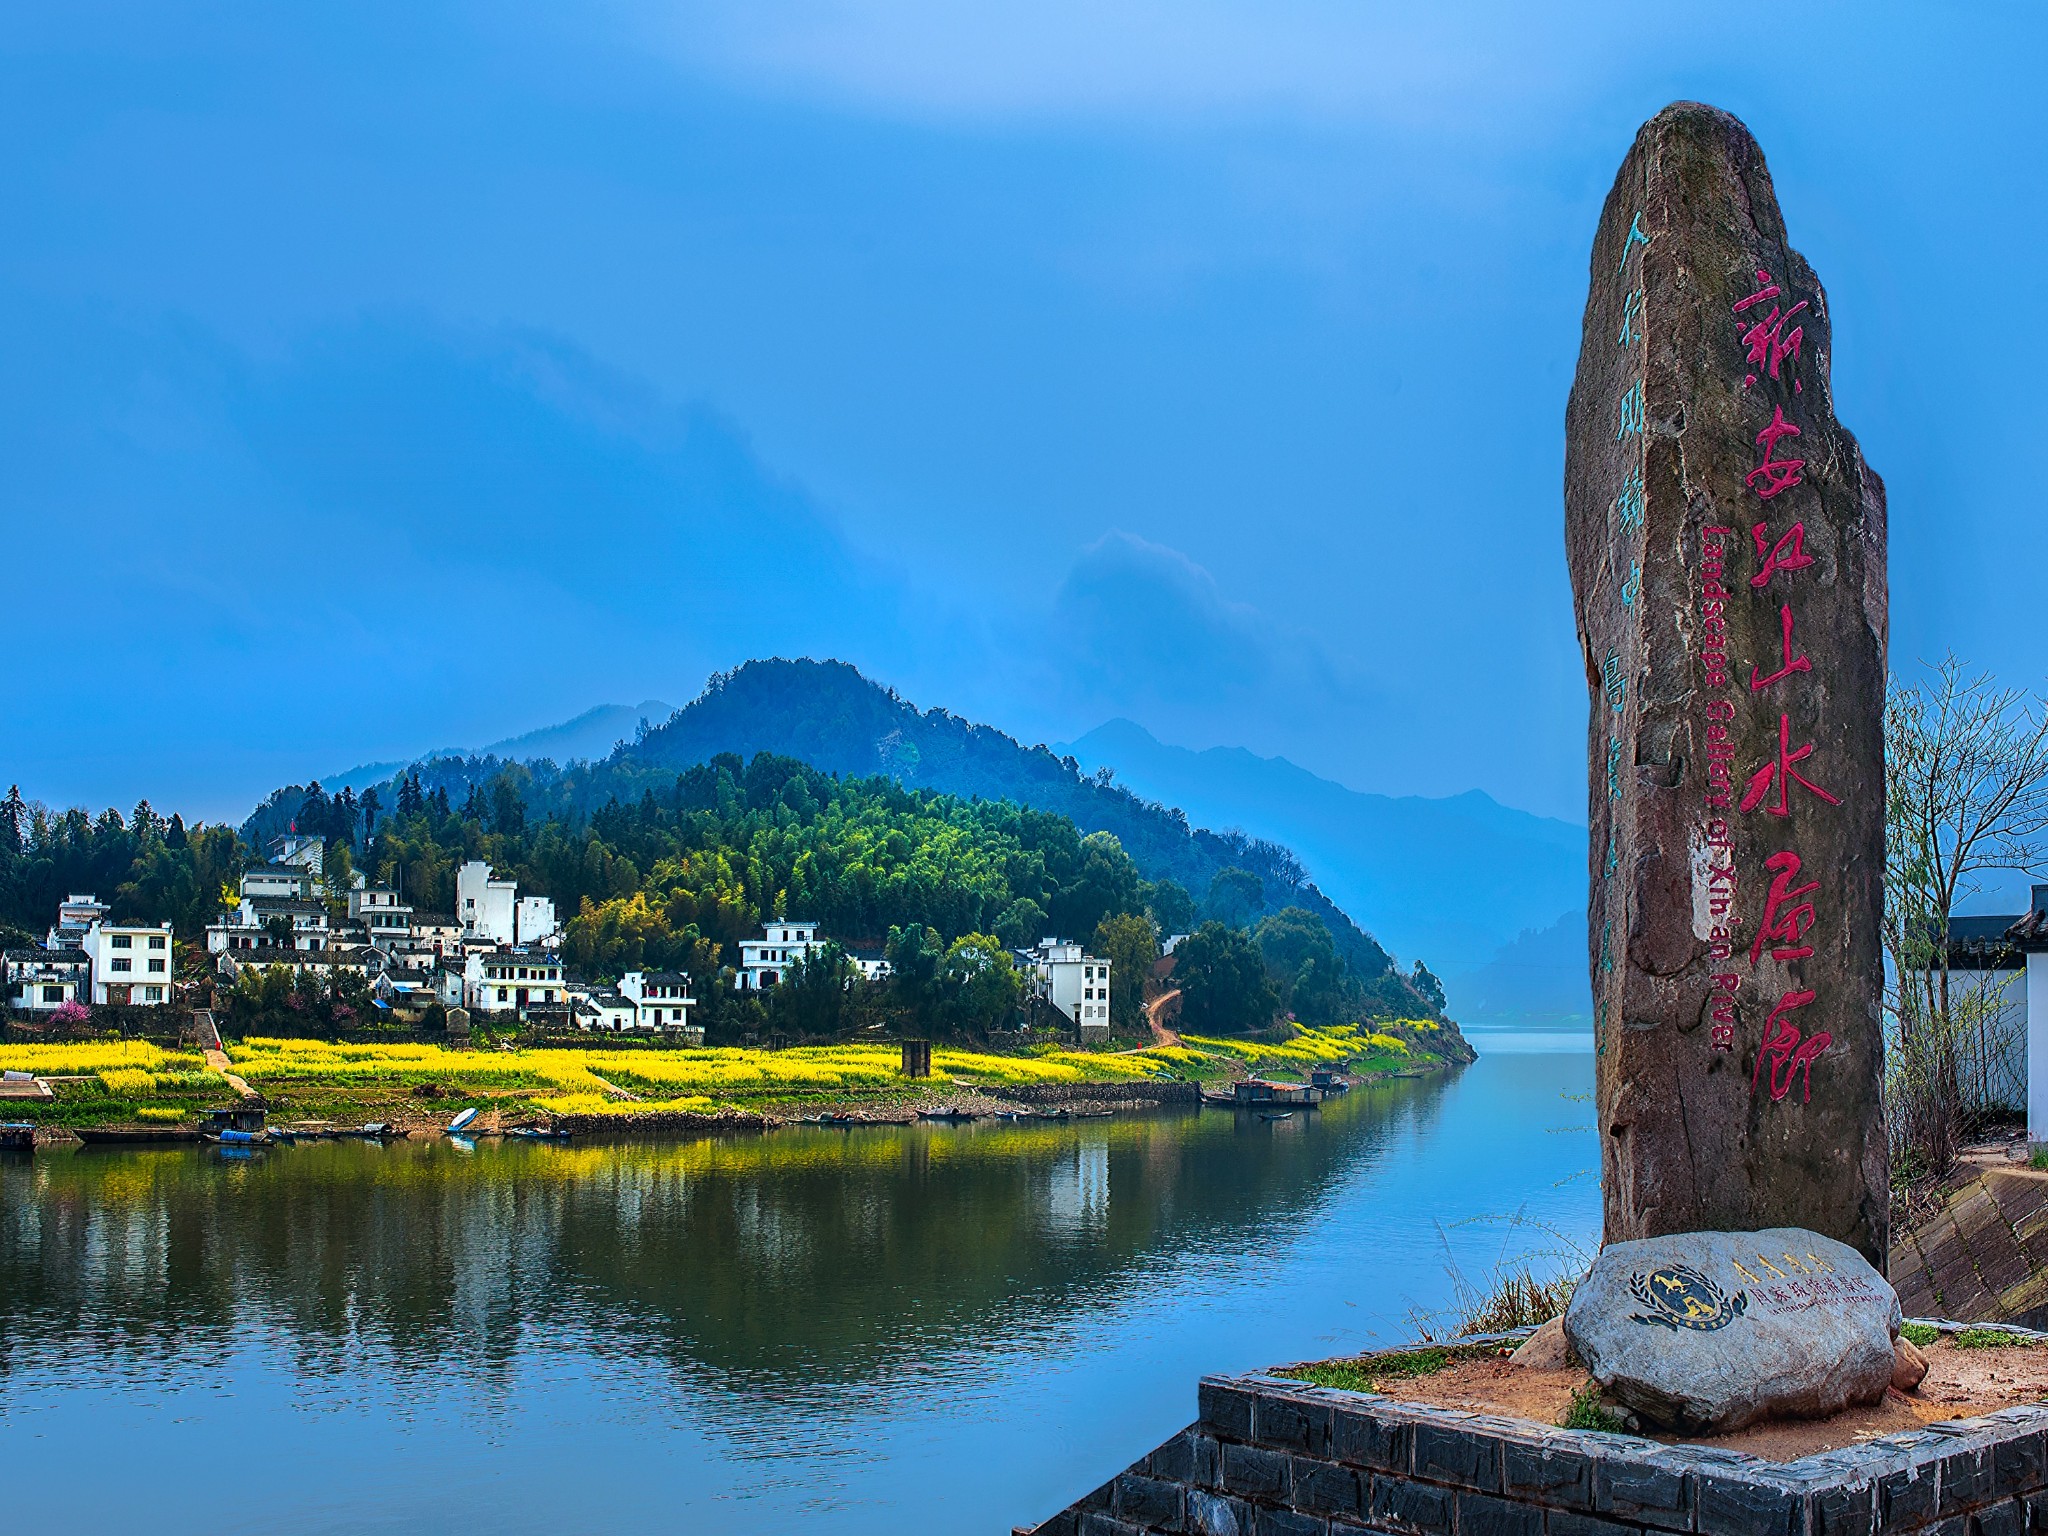 发源于安徽的休宁,新安江由此绵延百里,又被称之为"山水画廊.